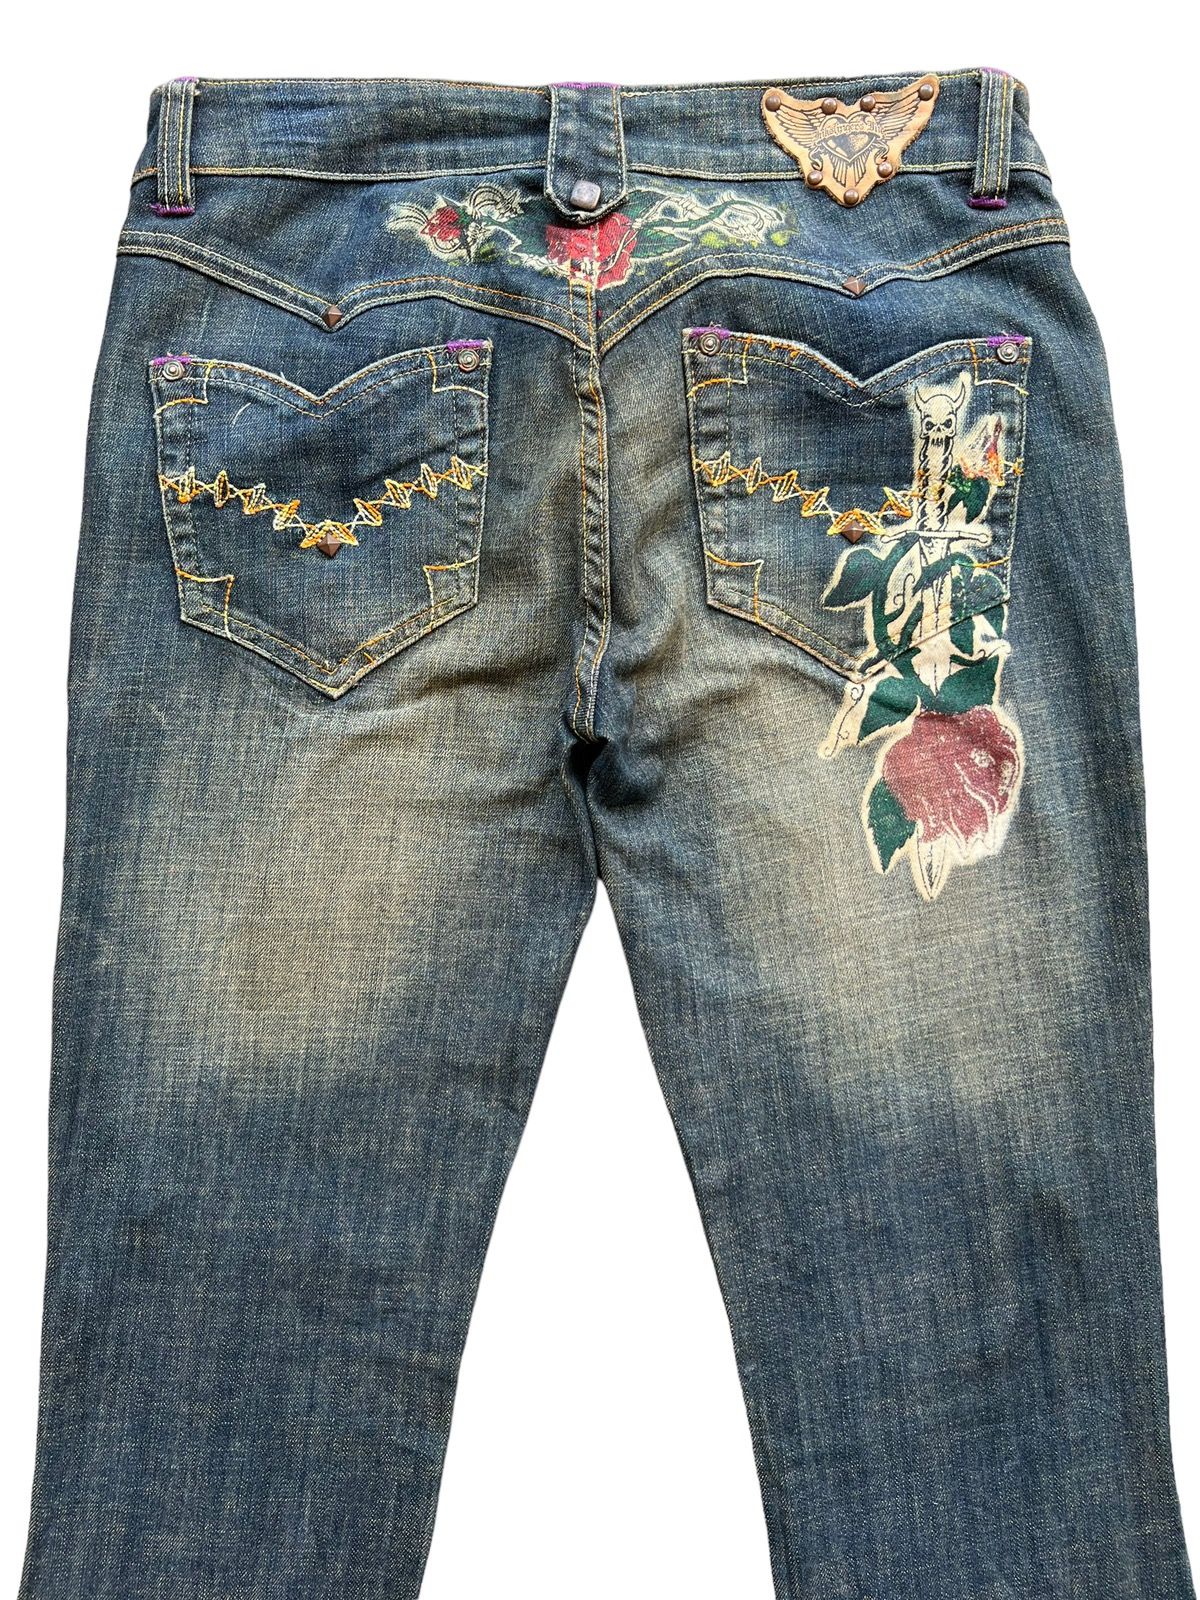 Archival Clothing - Vintage Gotchic Bones Mudwash Punk Flare Denim Jeans 28x33 - 6